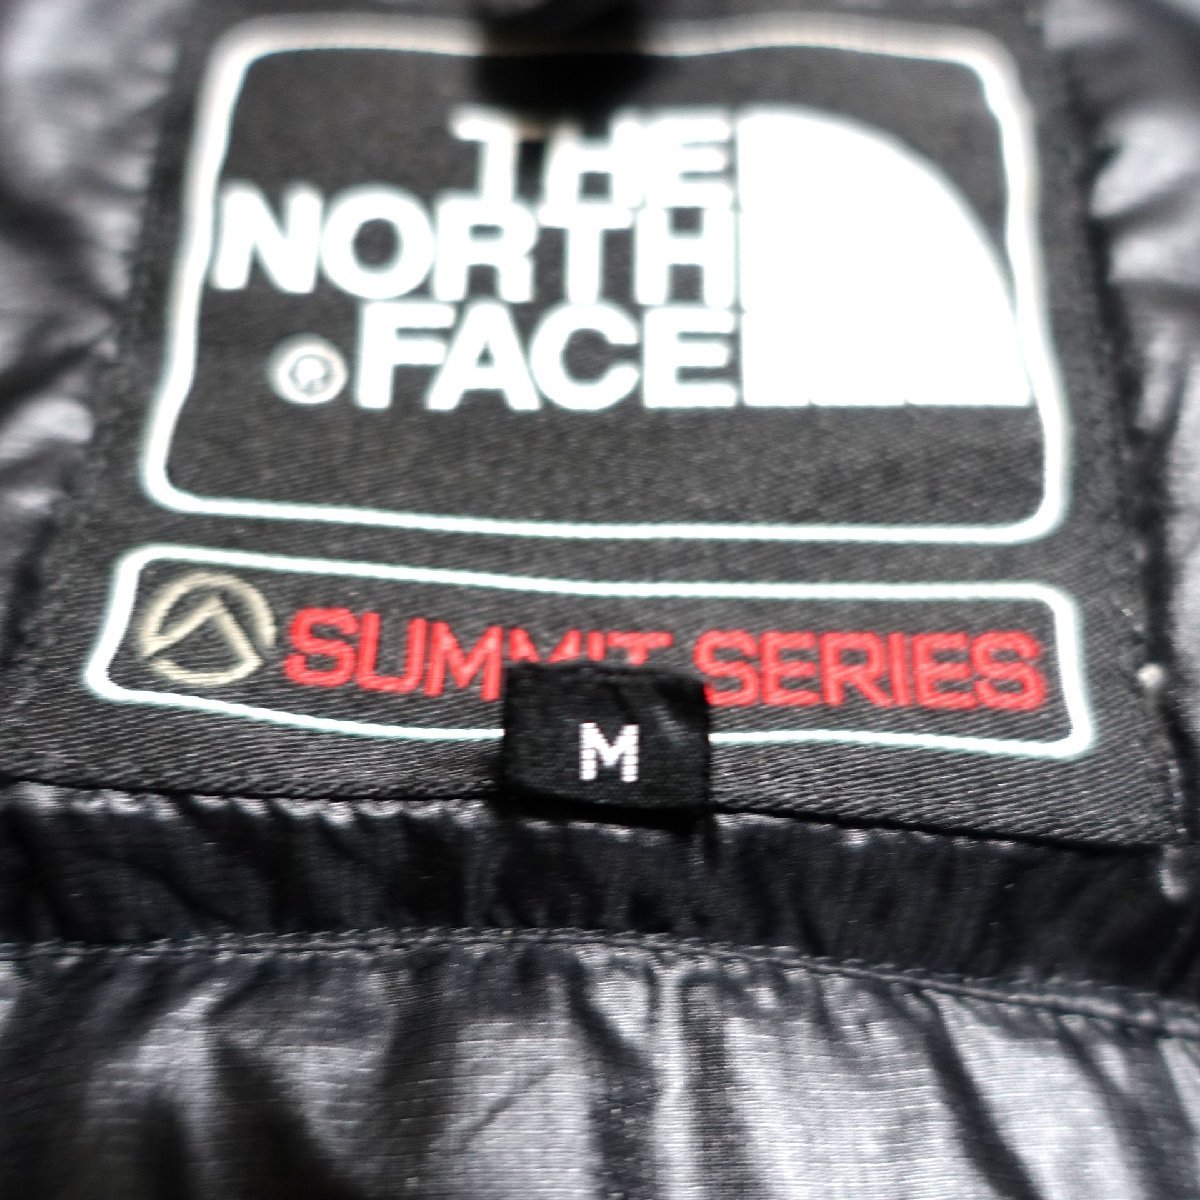 THE NORTH FACE ノースフェイス サミットシリーズ ダウンジャケット 700FP レディース Mサイズ 正規品 ブラック Z614_画像6